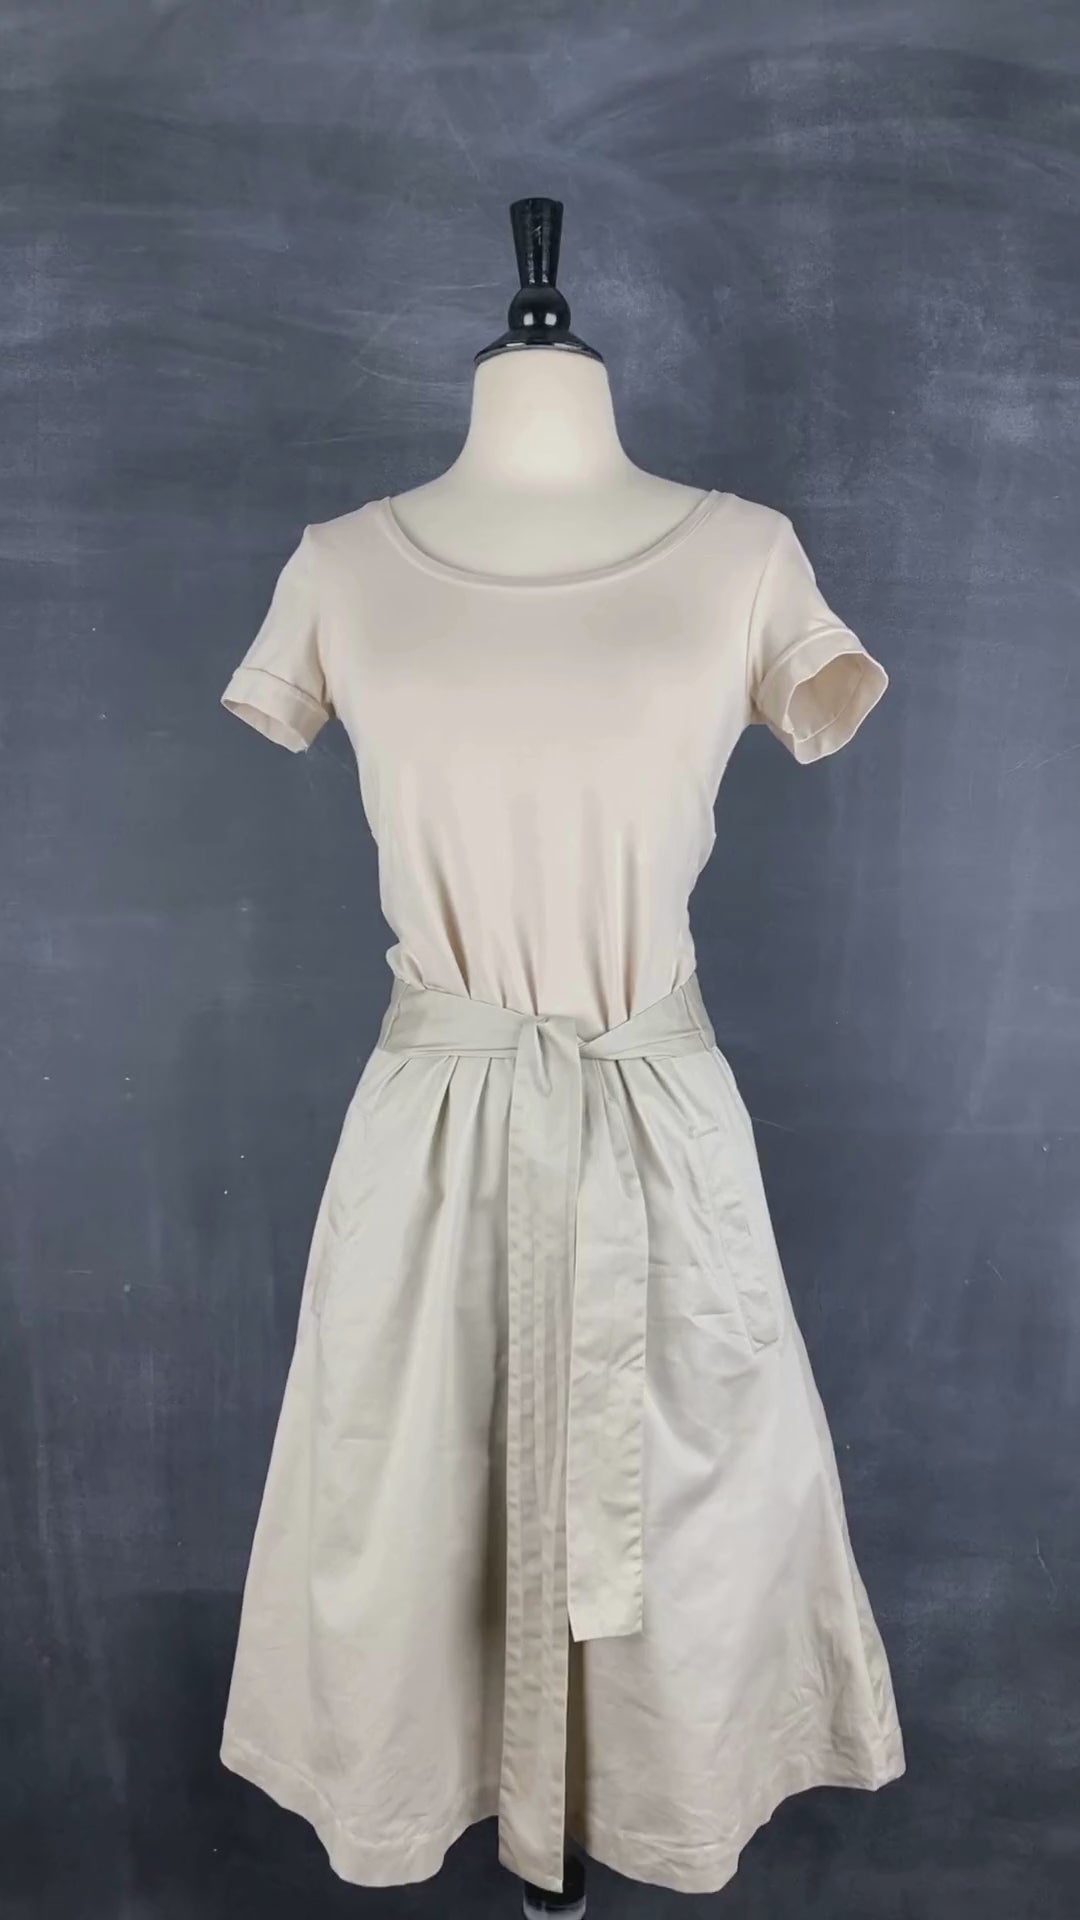 Robe greige bi-matière avec poches Tristan & Iseut, taille small. Vue de la vidéo qui présente tous les détails de la robe.